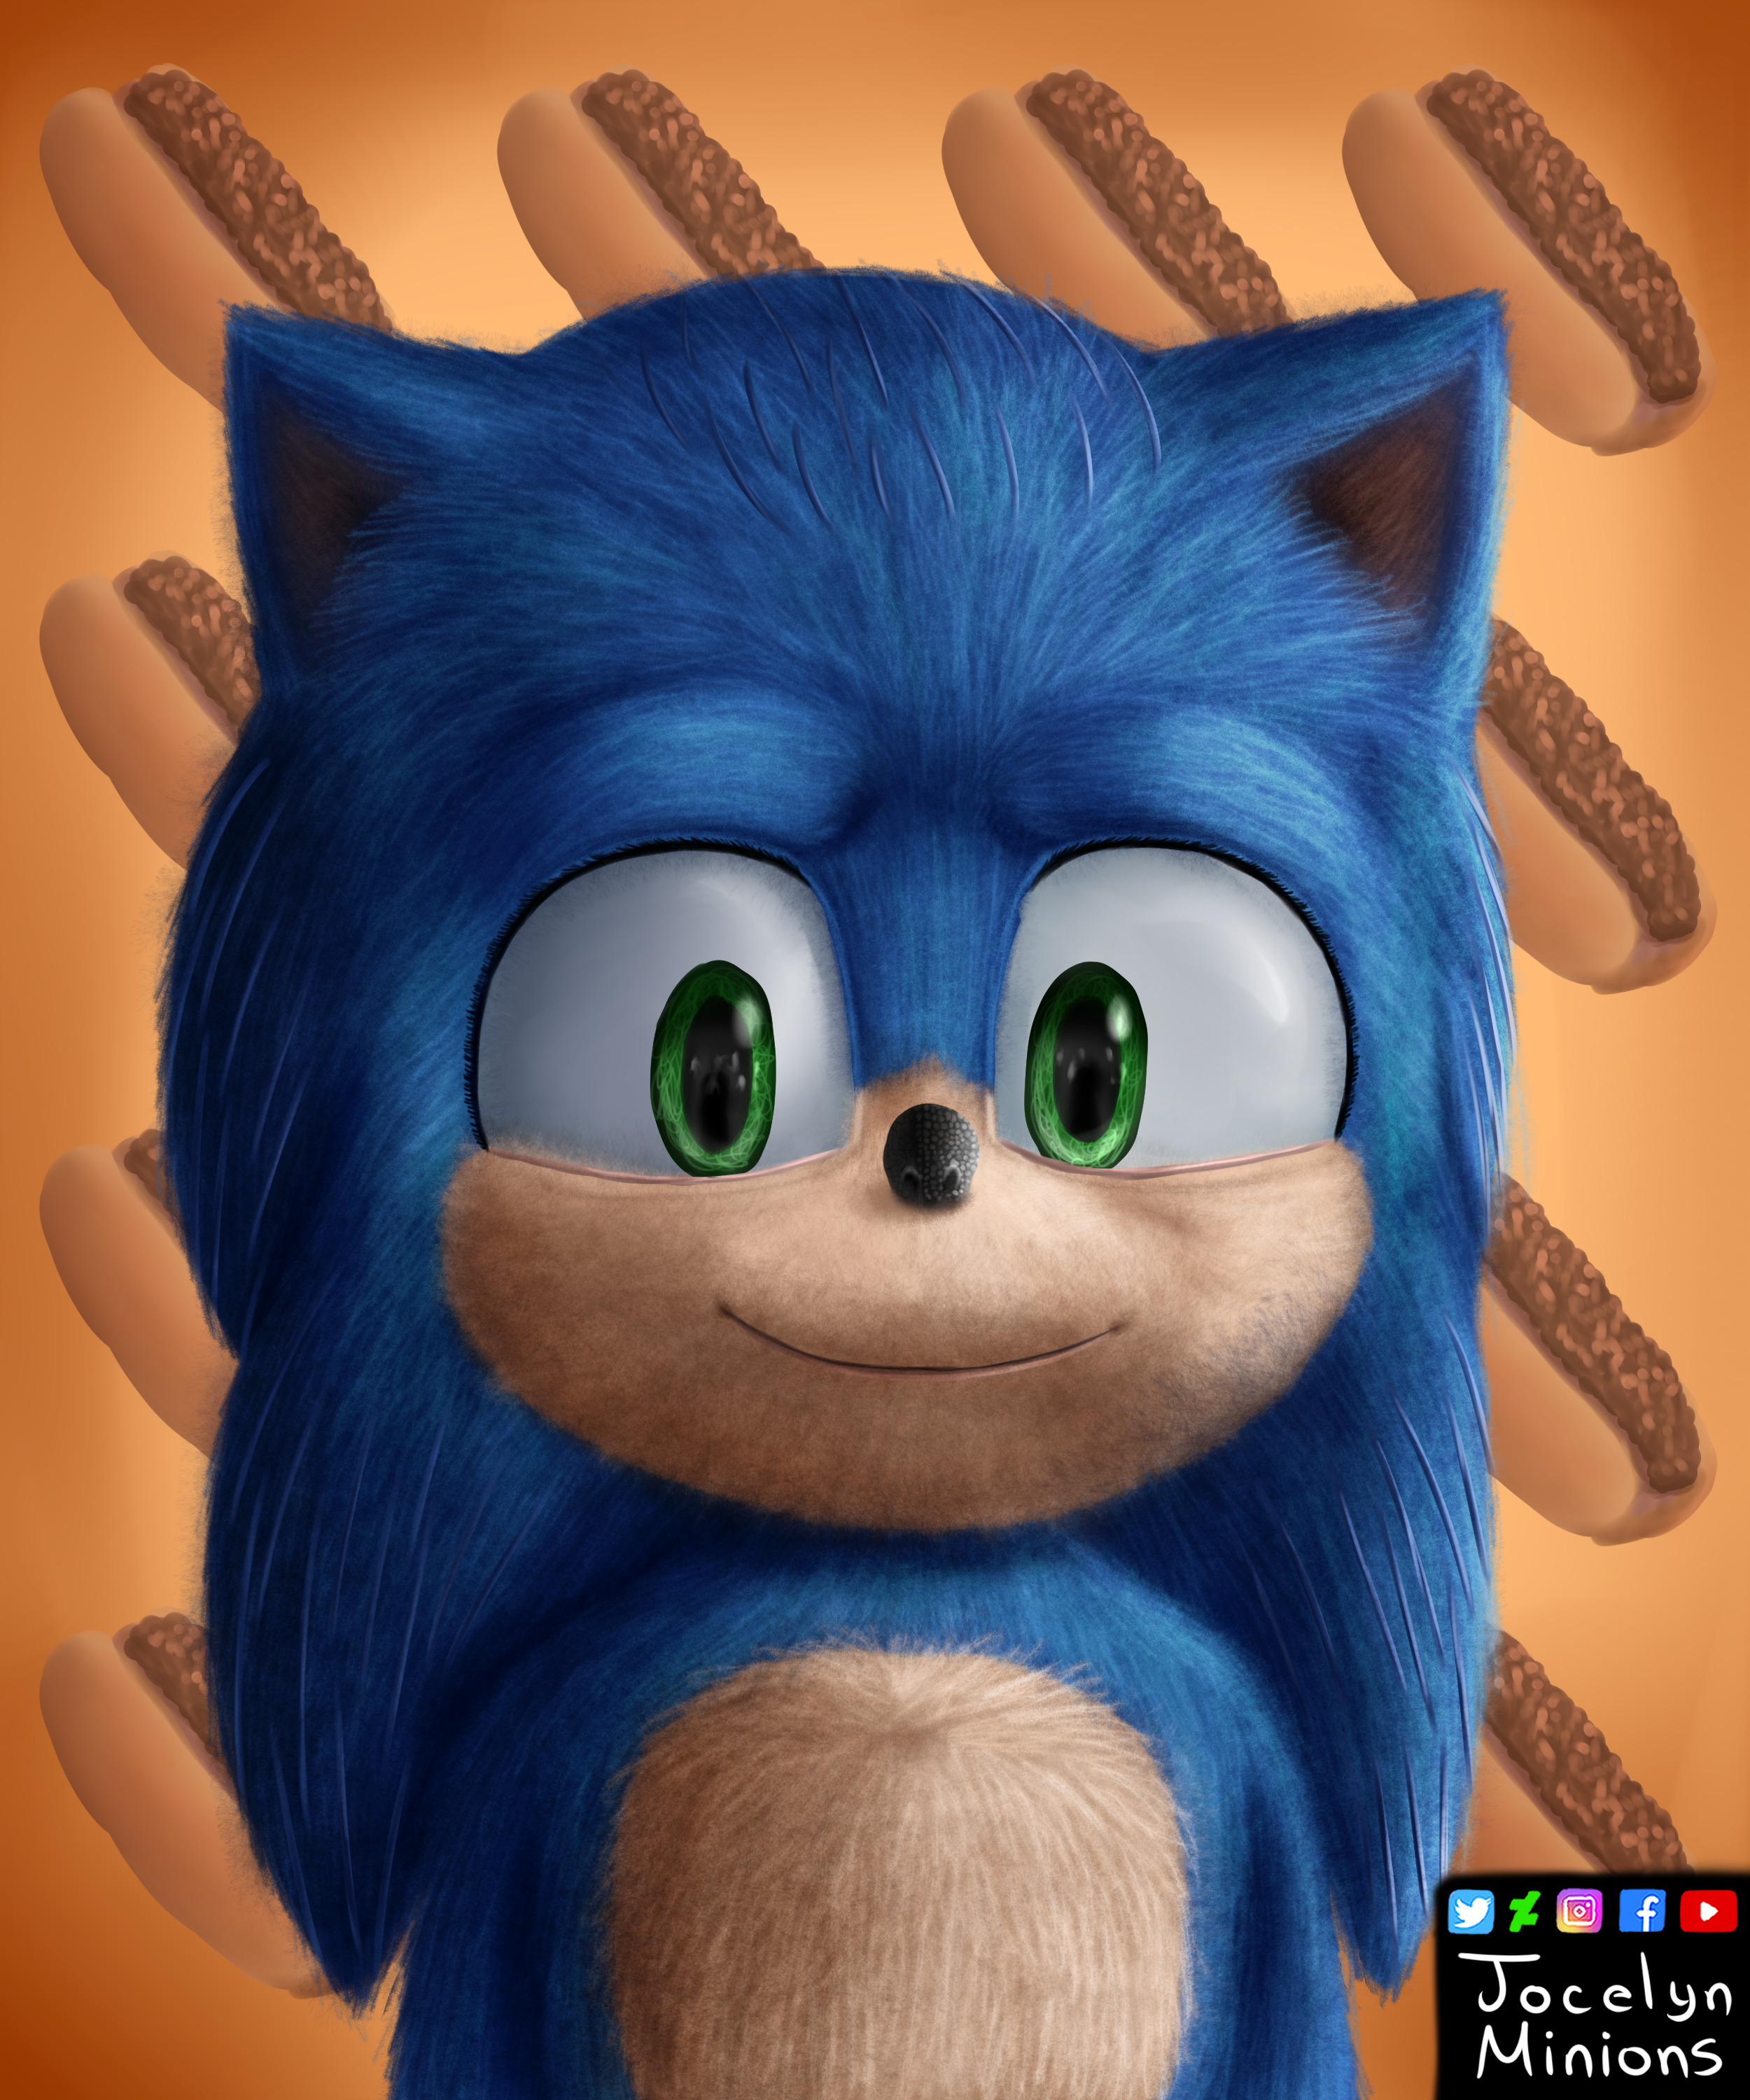 Sonic the Hedgehog 2020-Sonic 5 by GiuseppeDiRosso on DeviantArt